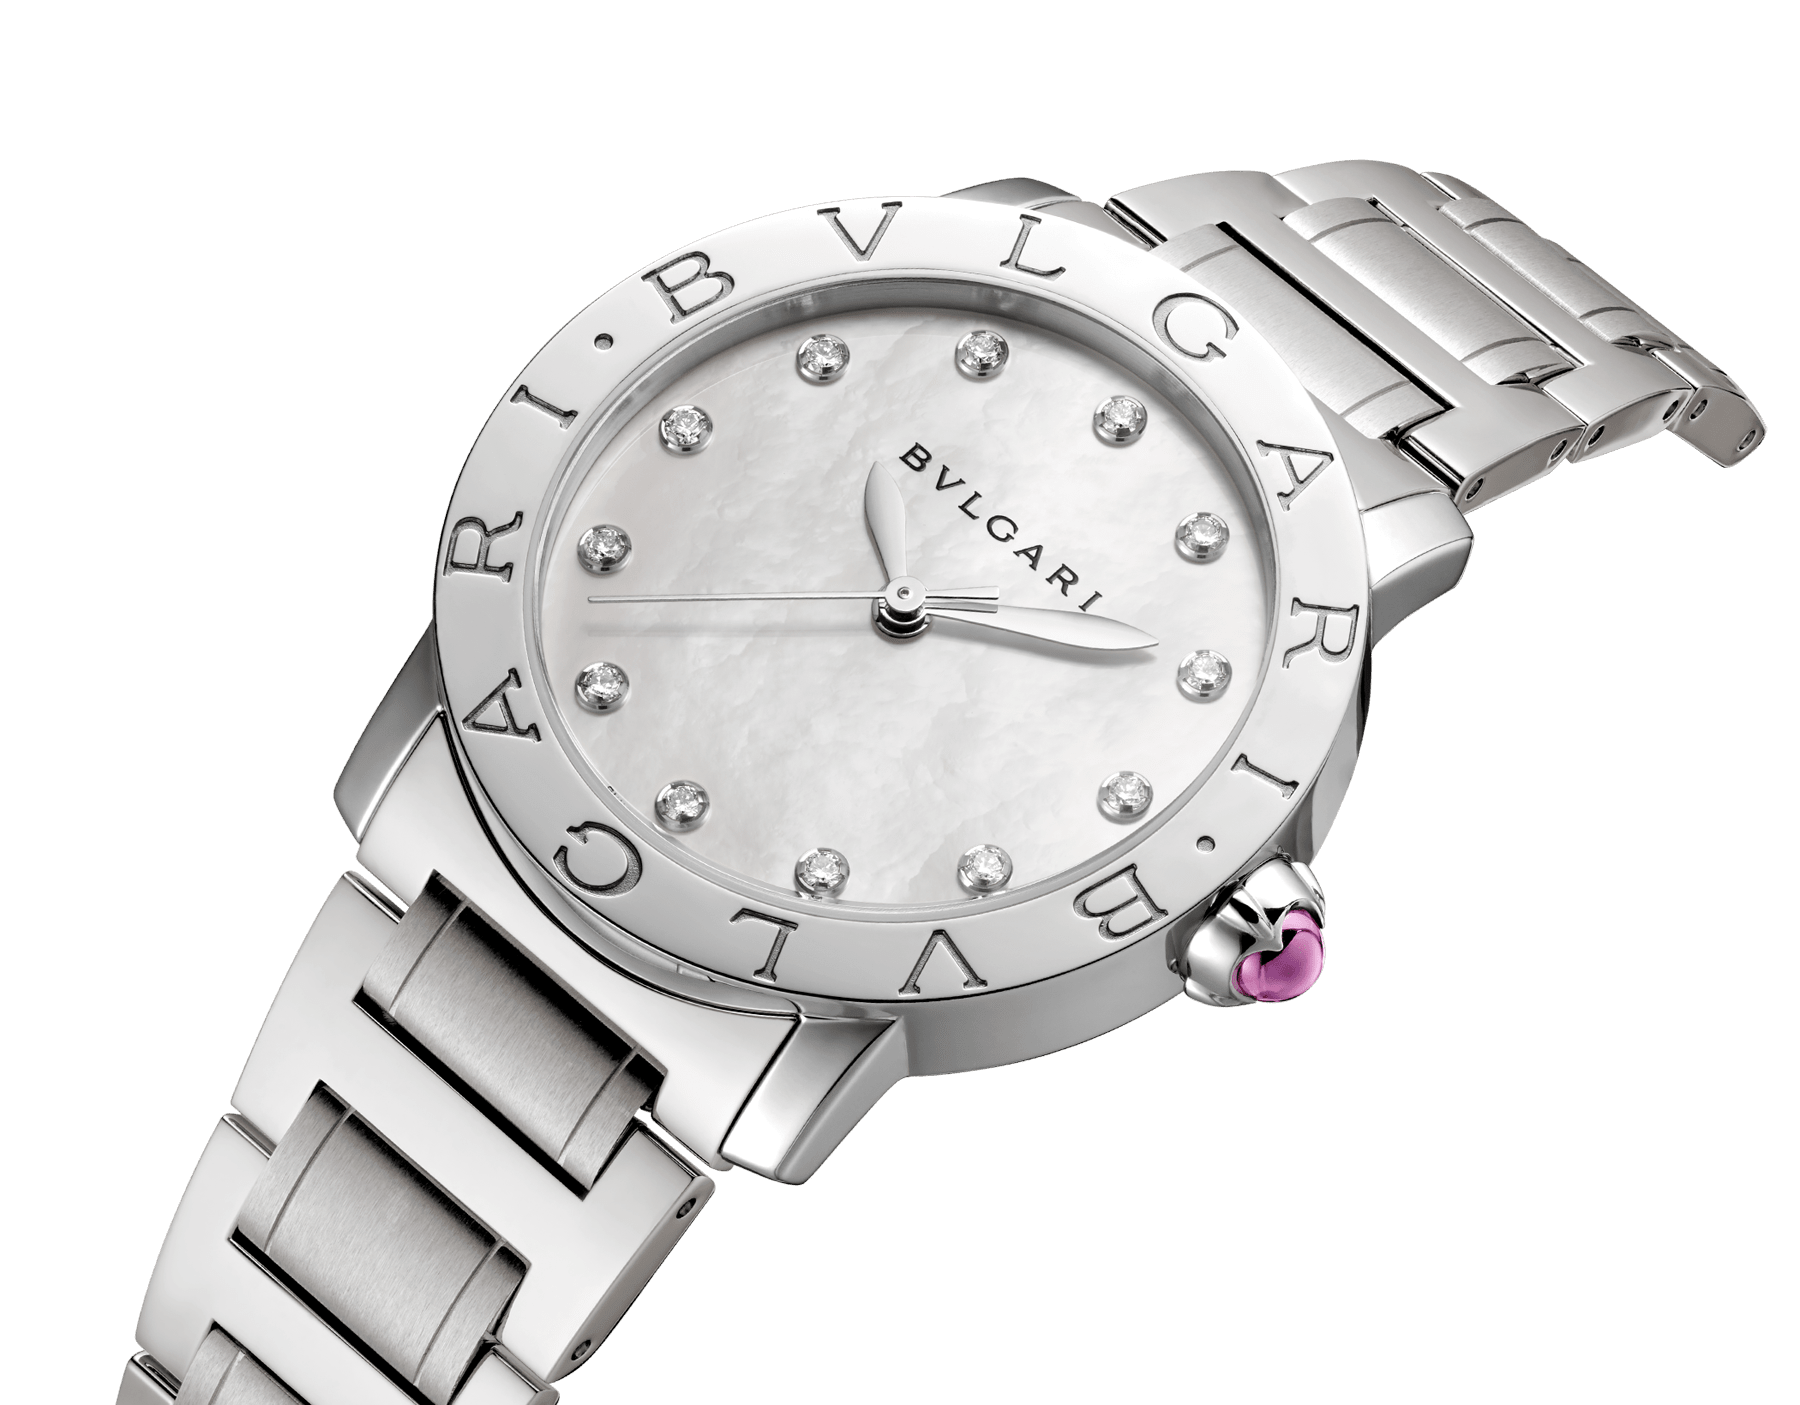 bvlgari watch price hk